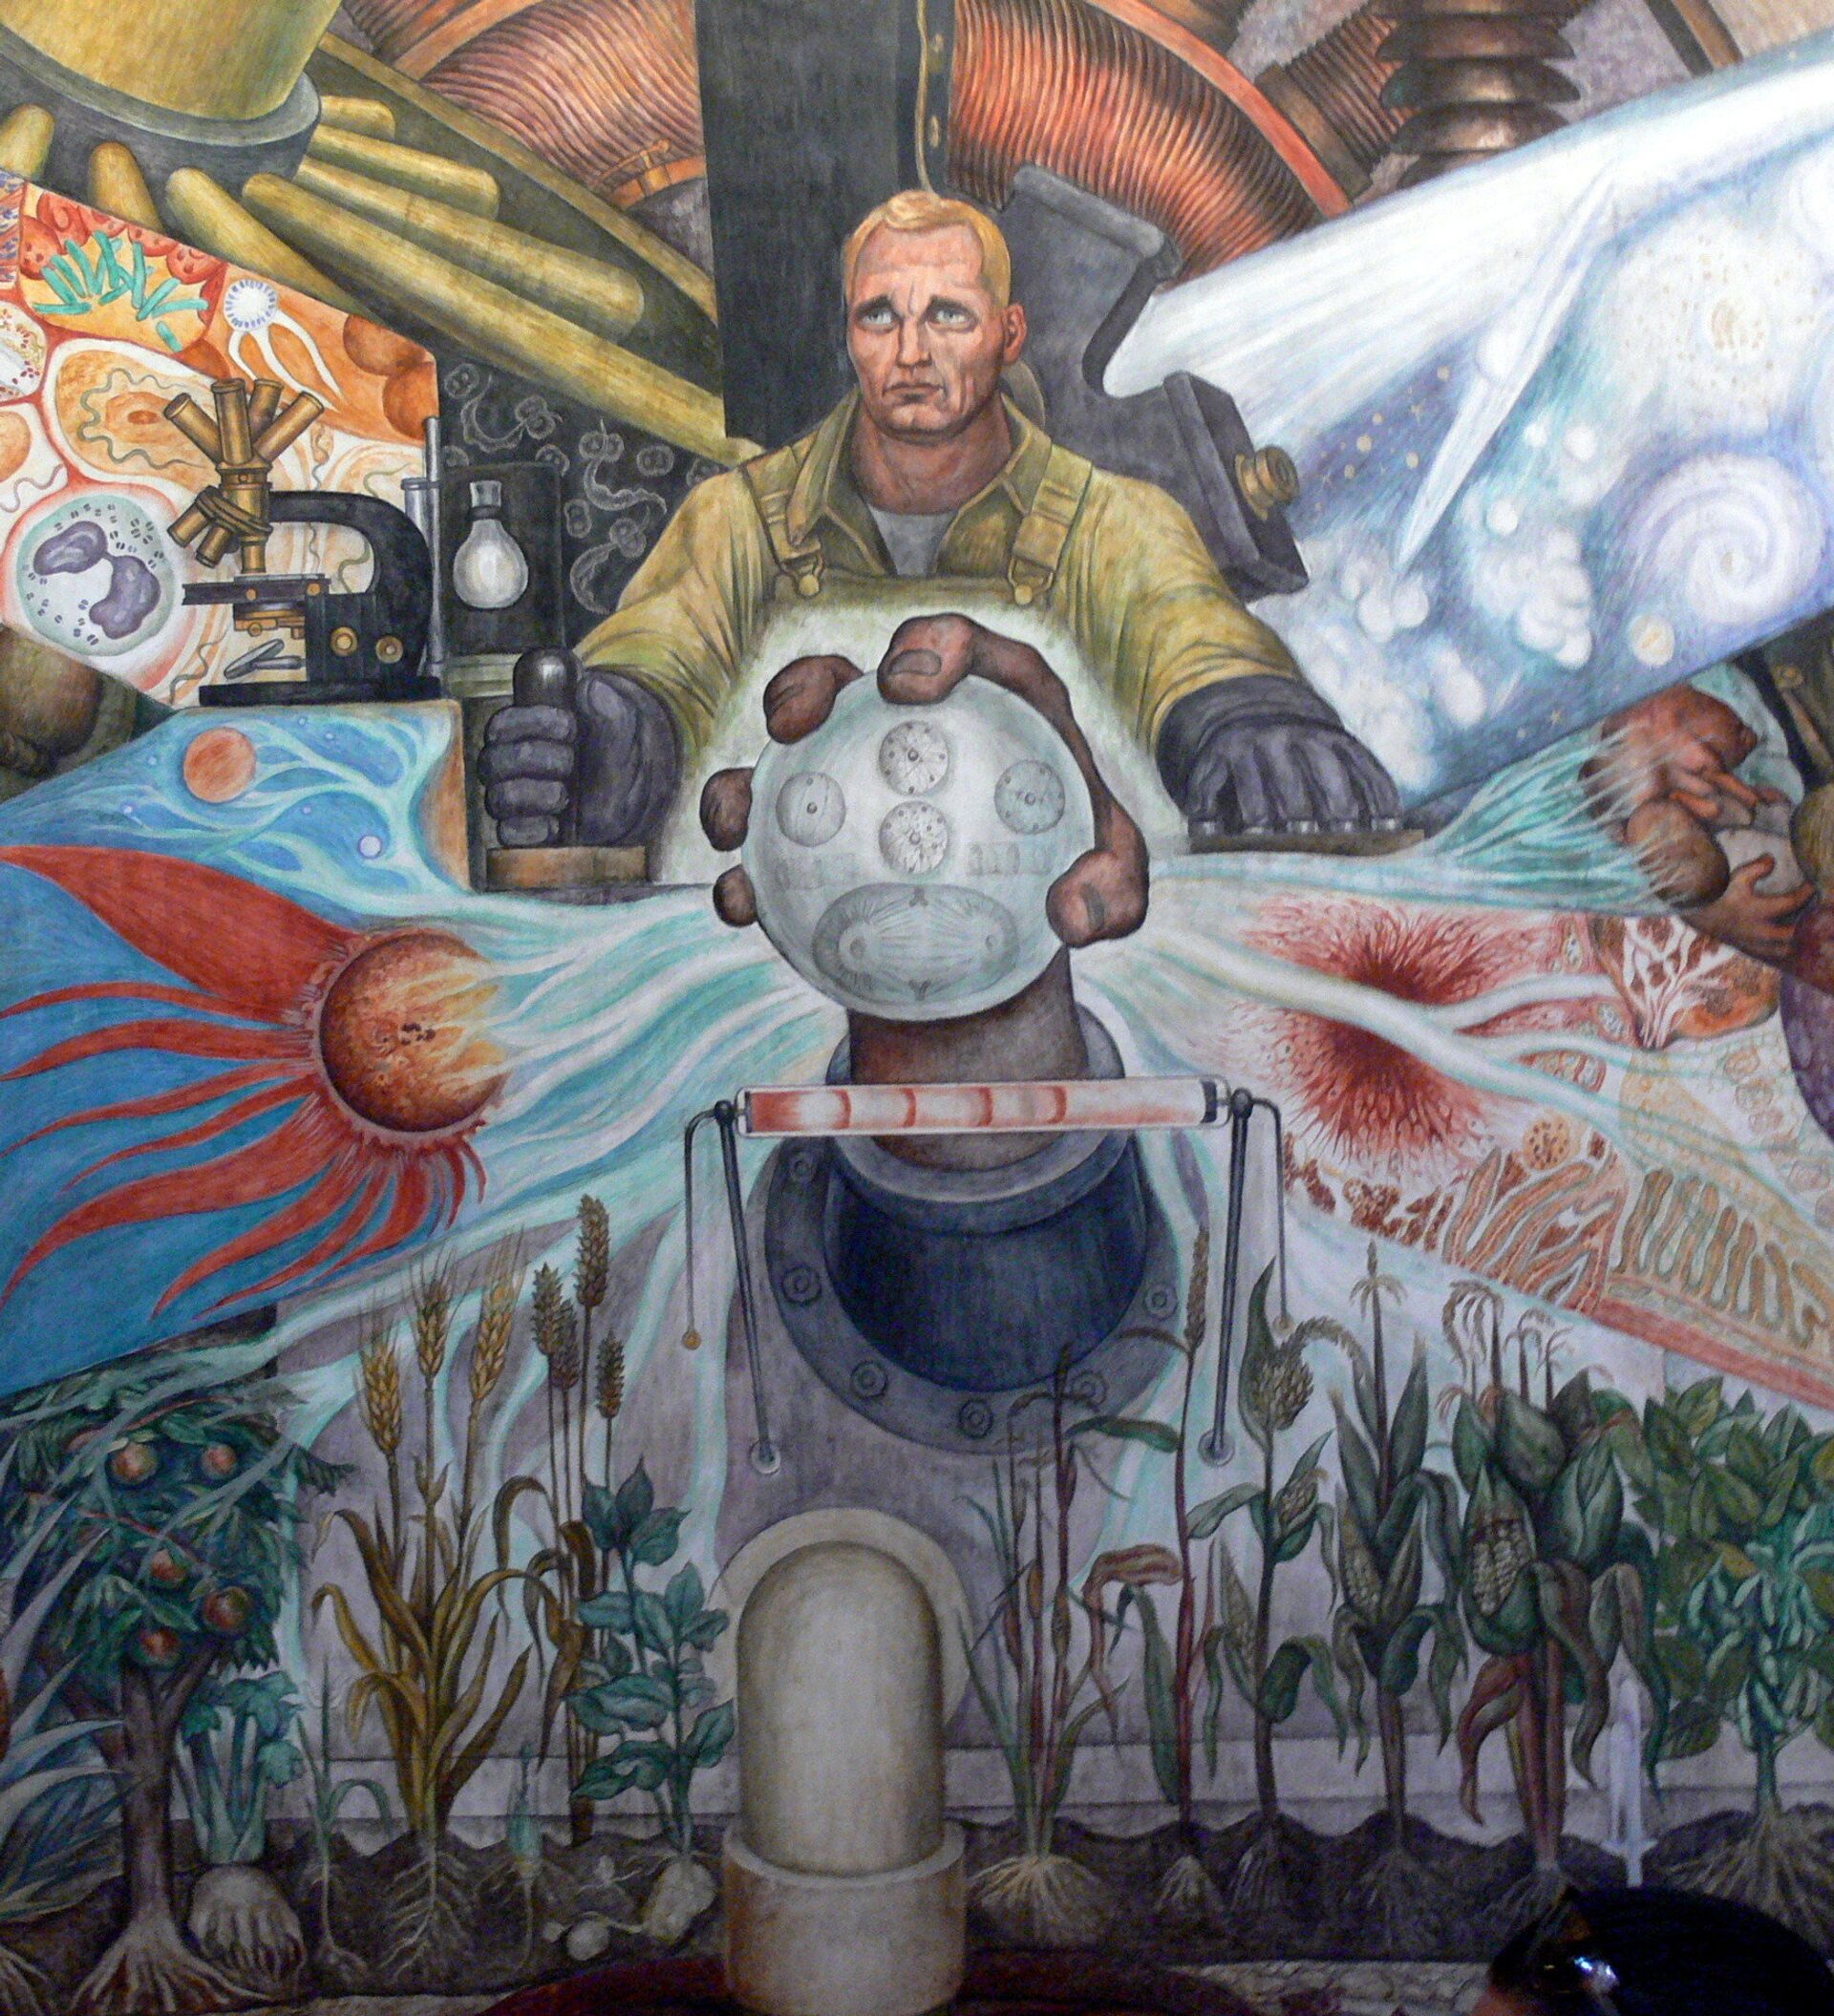 Gracias por tu ayuda Loco Disminución Diego Rivera, el redentor de la Revolución rusa en el muralismo mexicano -  07.11.2017, Sputnik Mundo